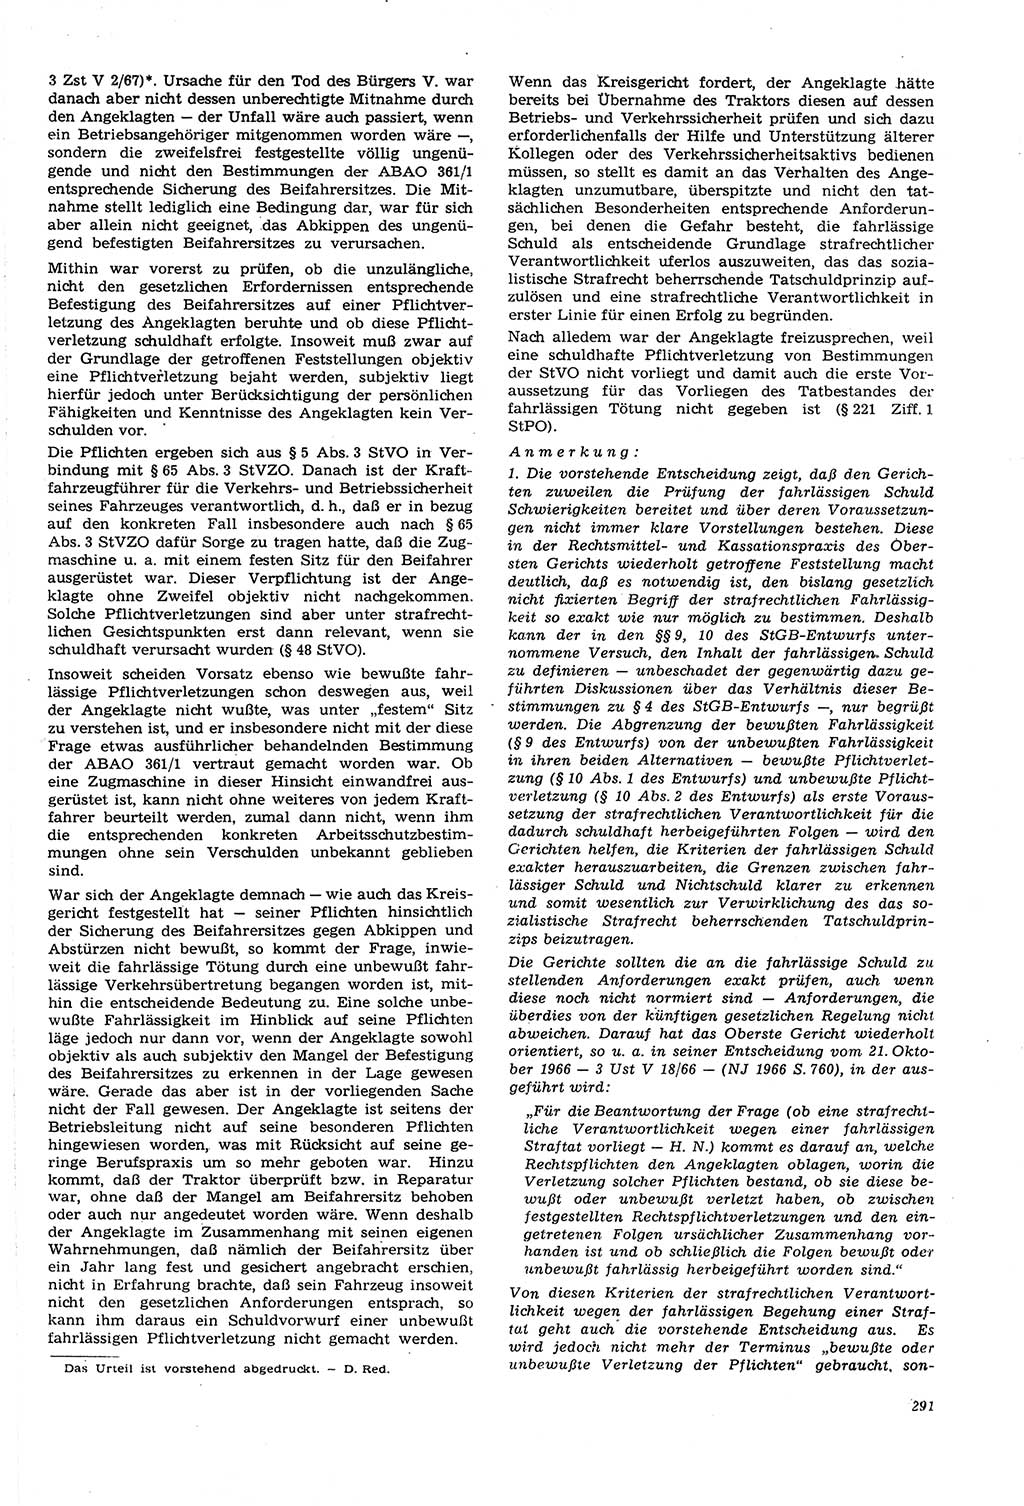 Neue Justiz (NJ), Zeitschrift für Recht und Rechtswissenschaft [Deutsche Demokratische Republik (DDR)], 21. Jahrgang 1967, Seite 291 (NJ DDR 1967, S. 291)